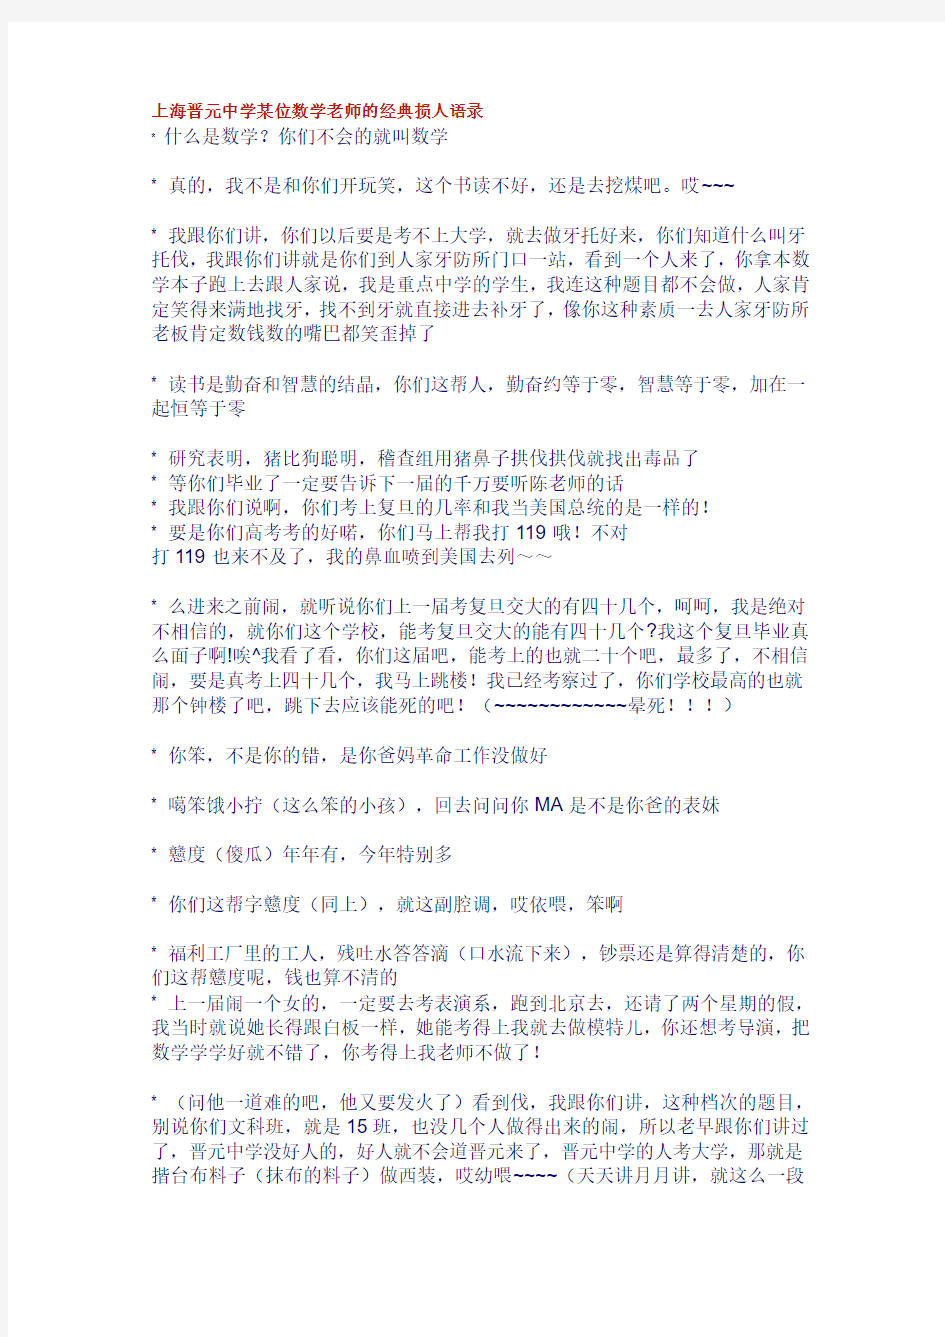 上海晋元中学某位数学老师的经典损人语录